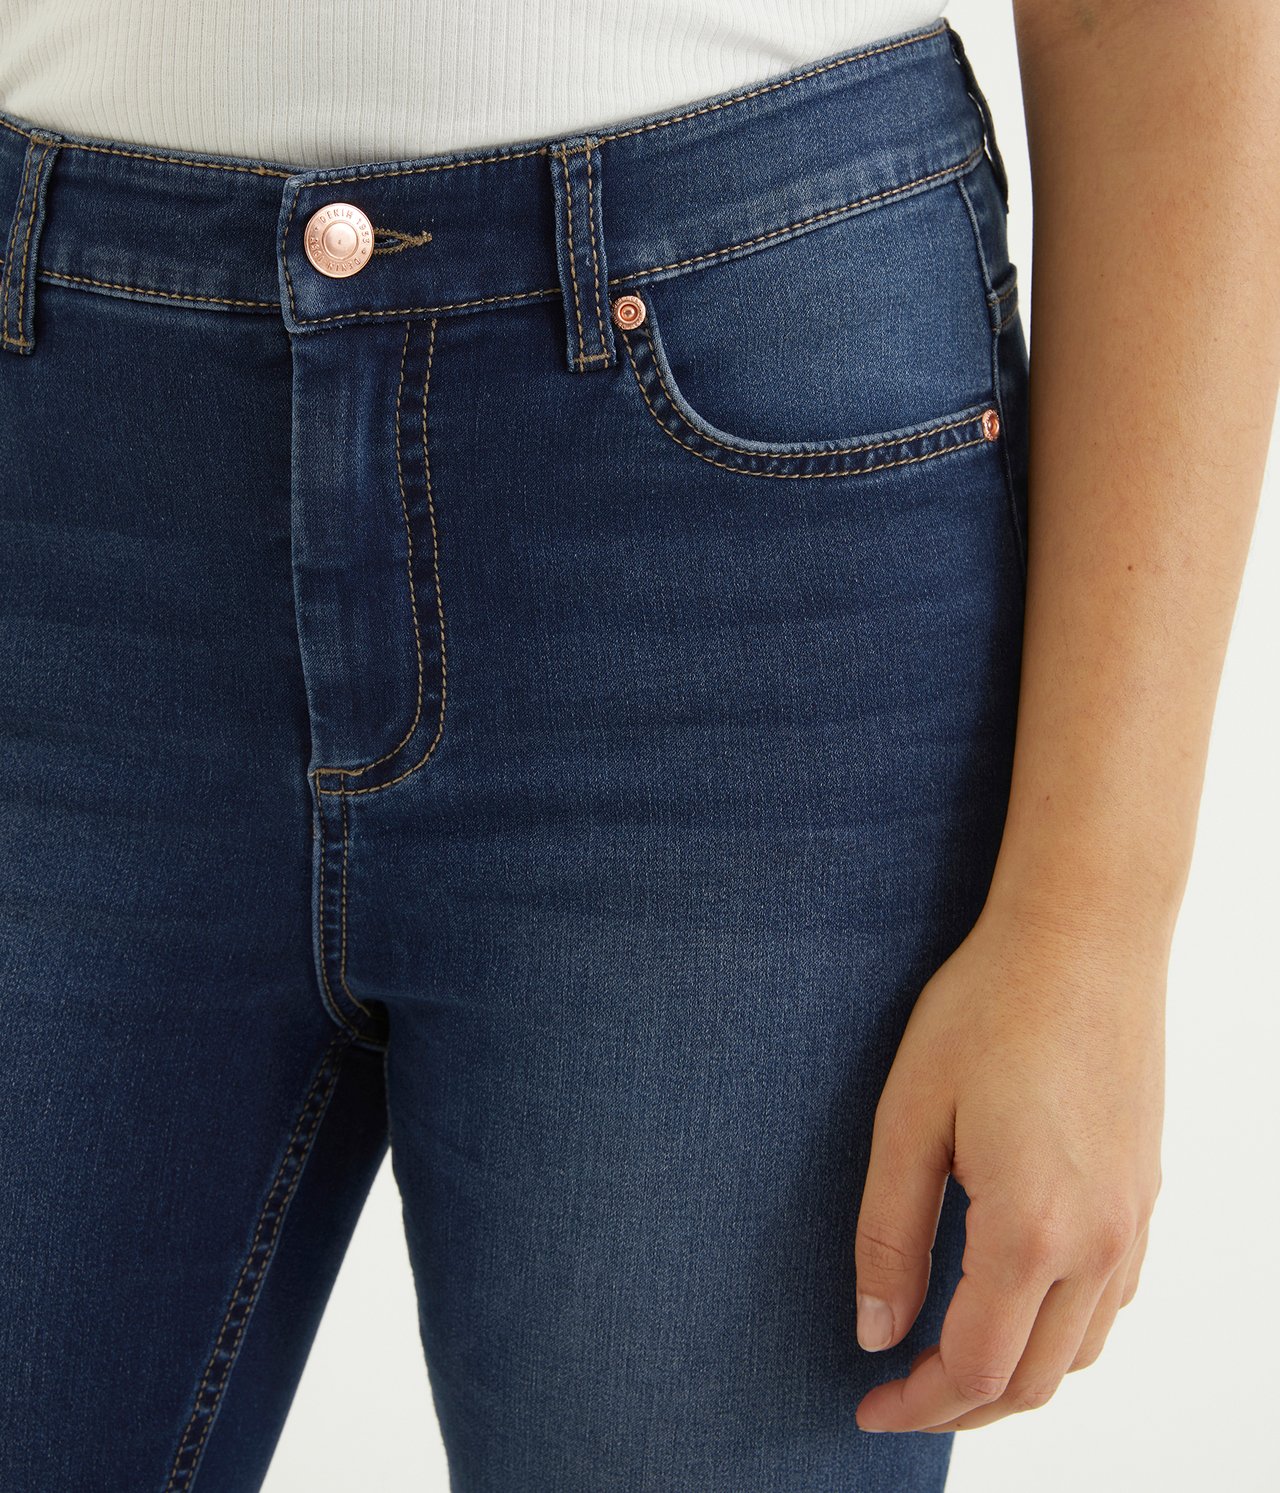 Super slim jeans short leg Mörk denim - null - 1